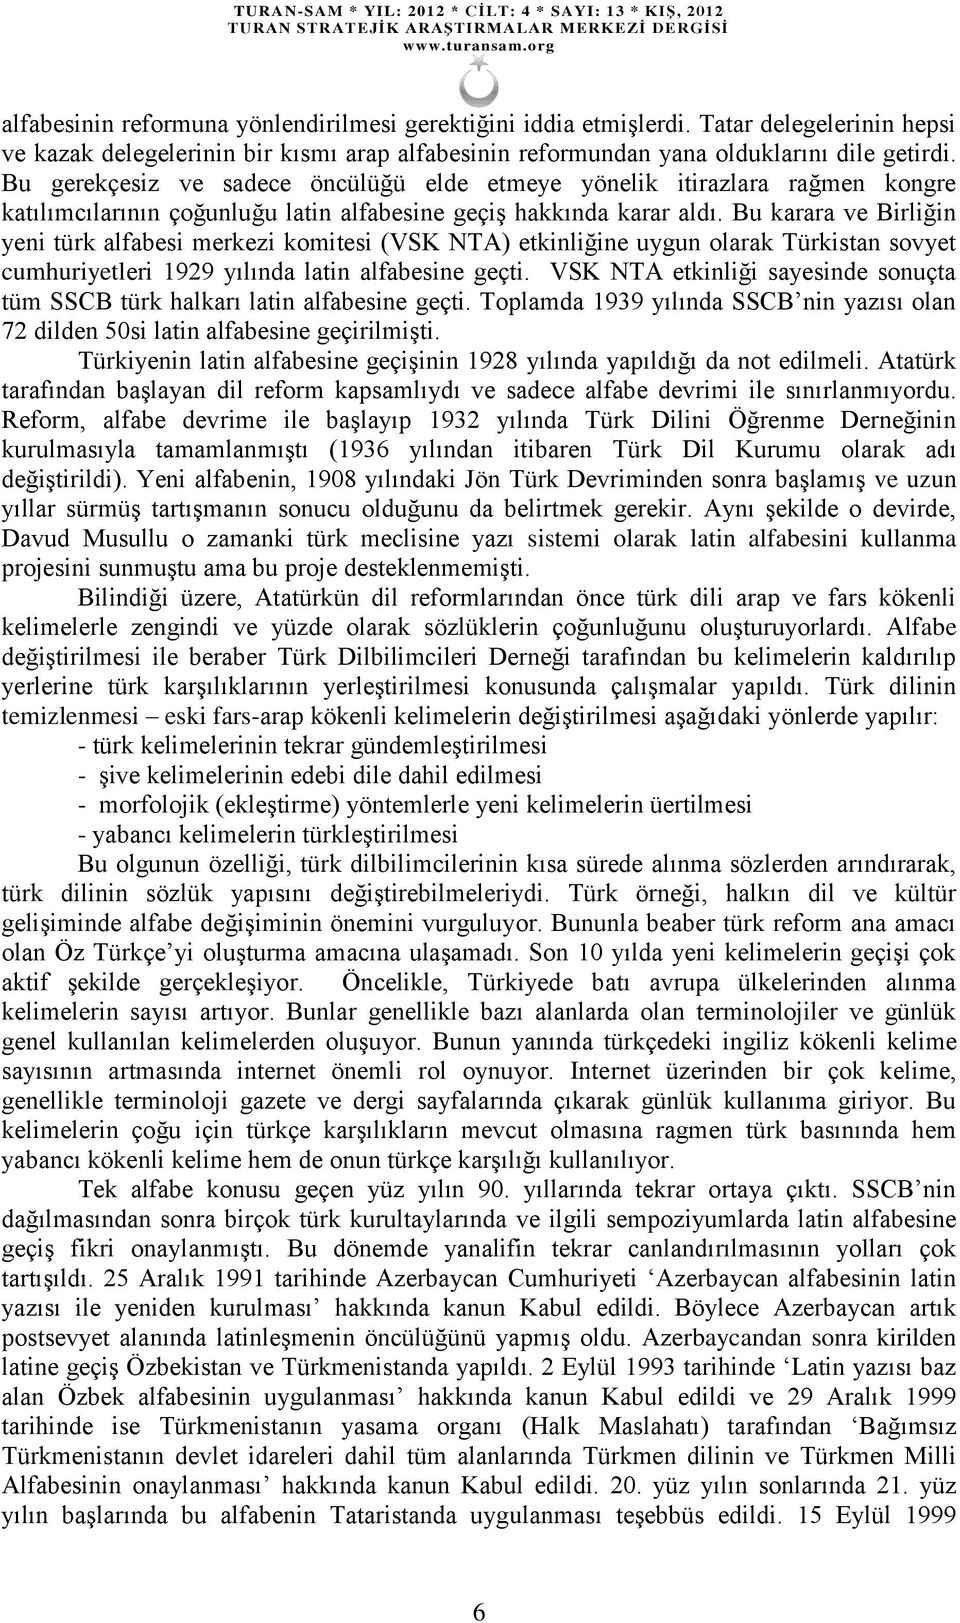 Bu karara ve Birliğin yeni türk alfabesi merkezi komitesi (VSK NTA) etkinliğine uygun olarak Türkistan sovyet cumhuriyetleri 1929 yılında latin alfabesine geçti.